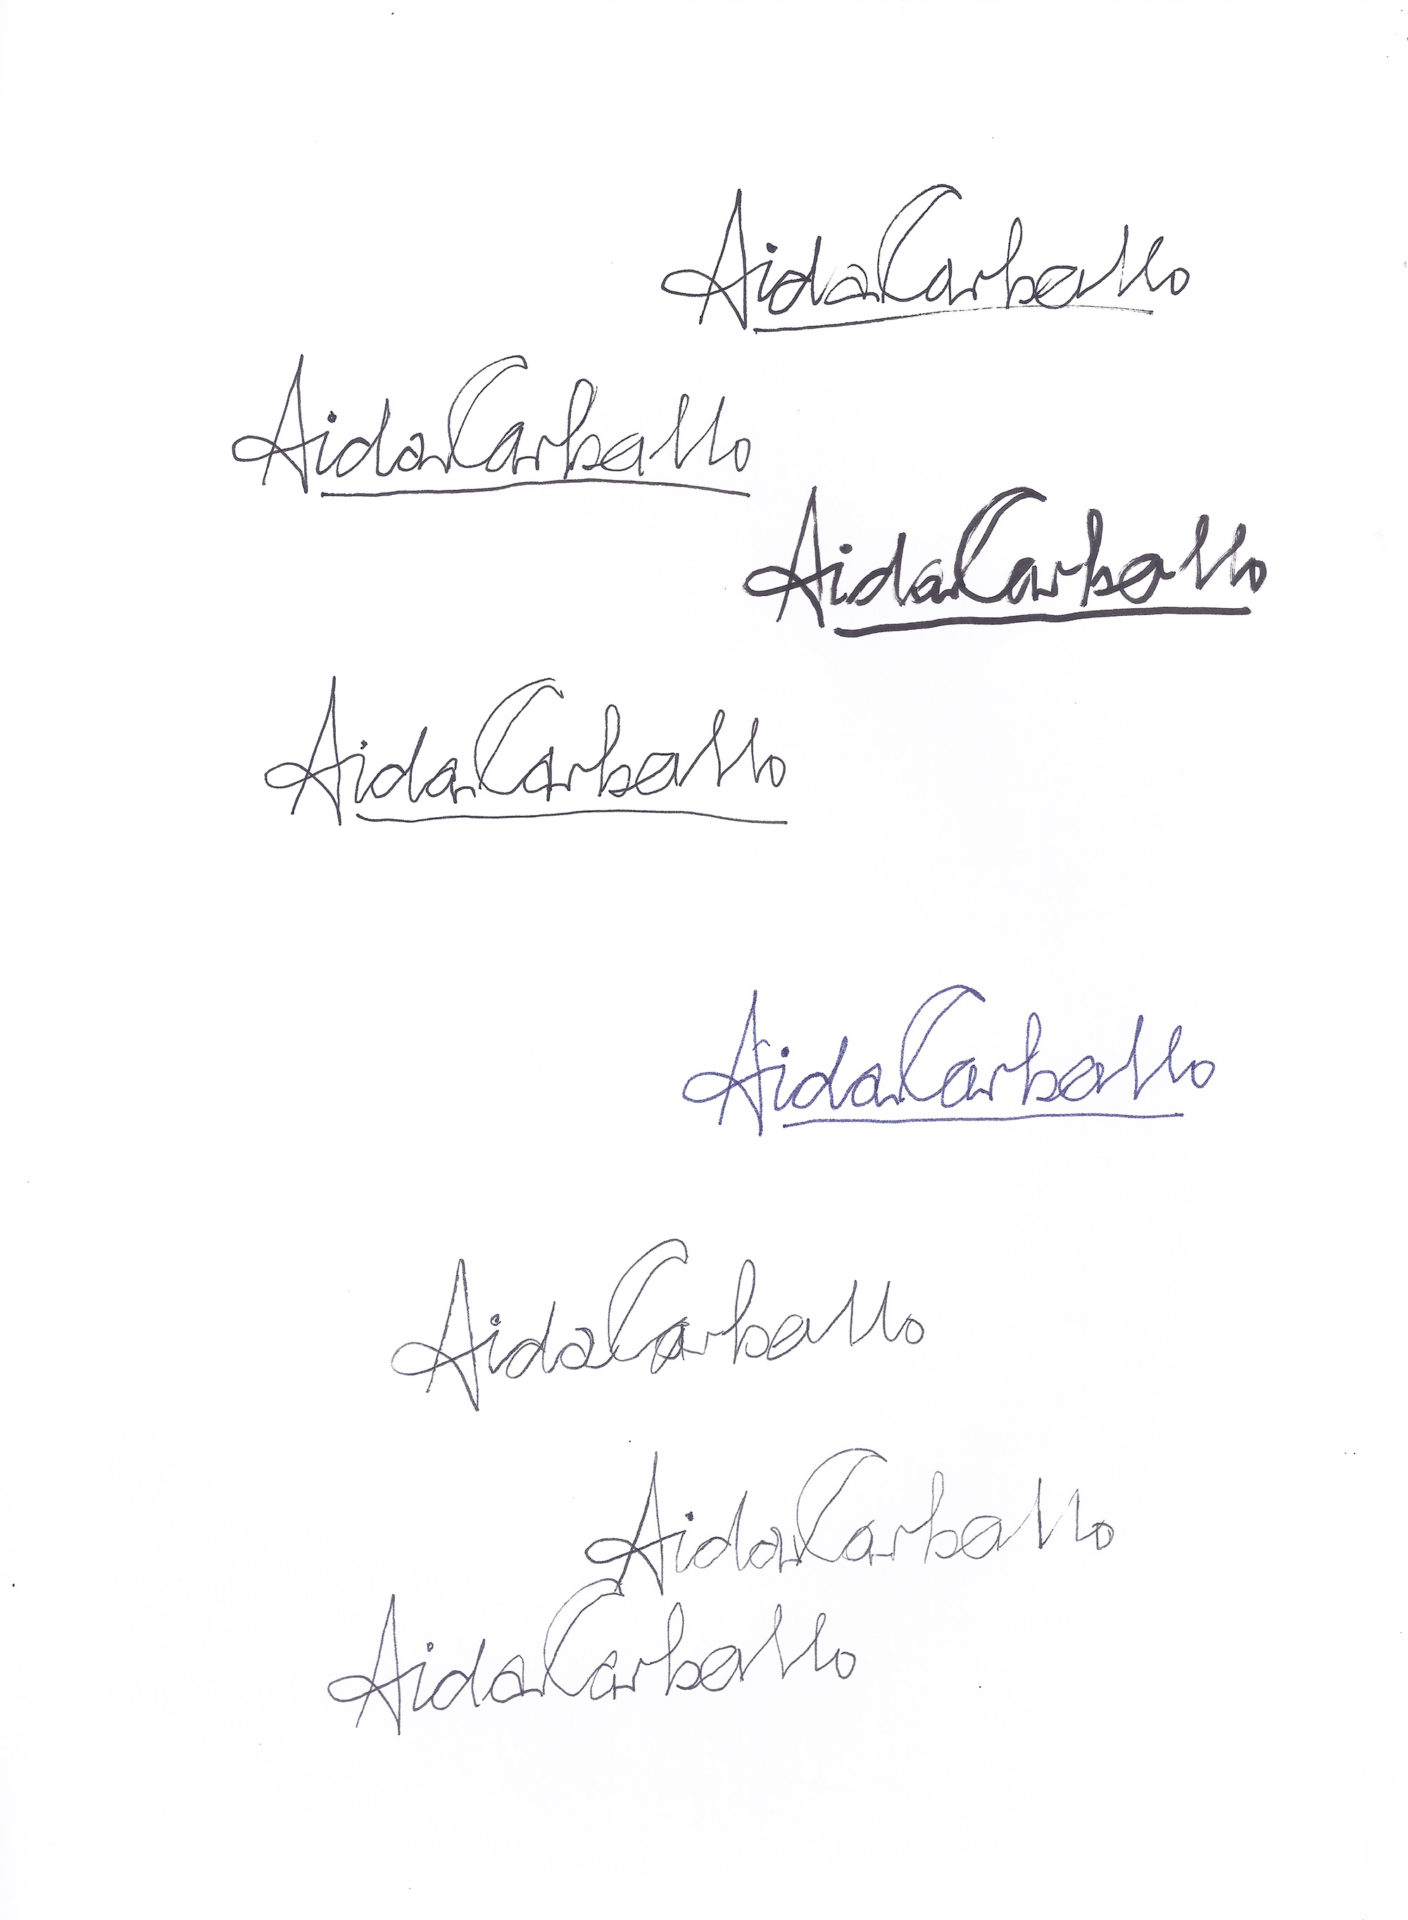 Aída Carballo. Firmas en reclamo de horas, Junta de Clasificación docente, 10 dic 1964. Series Manuscritos